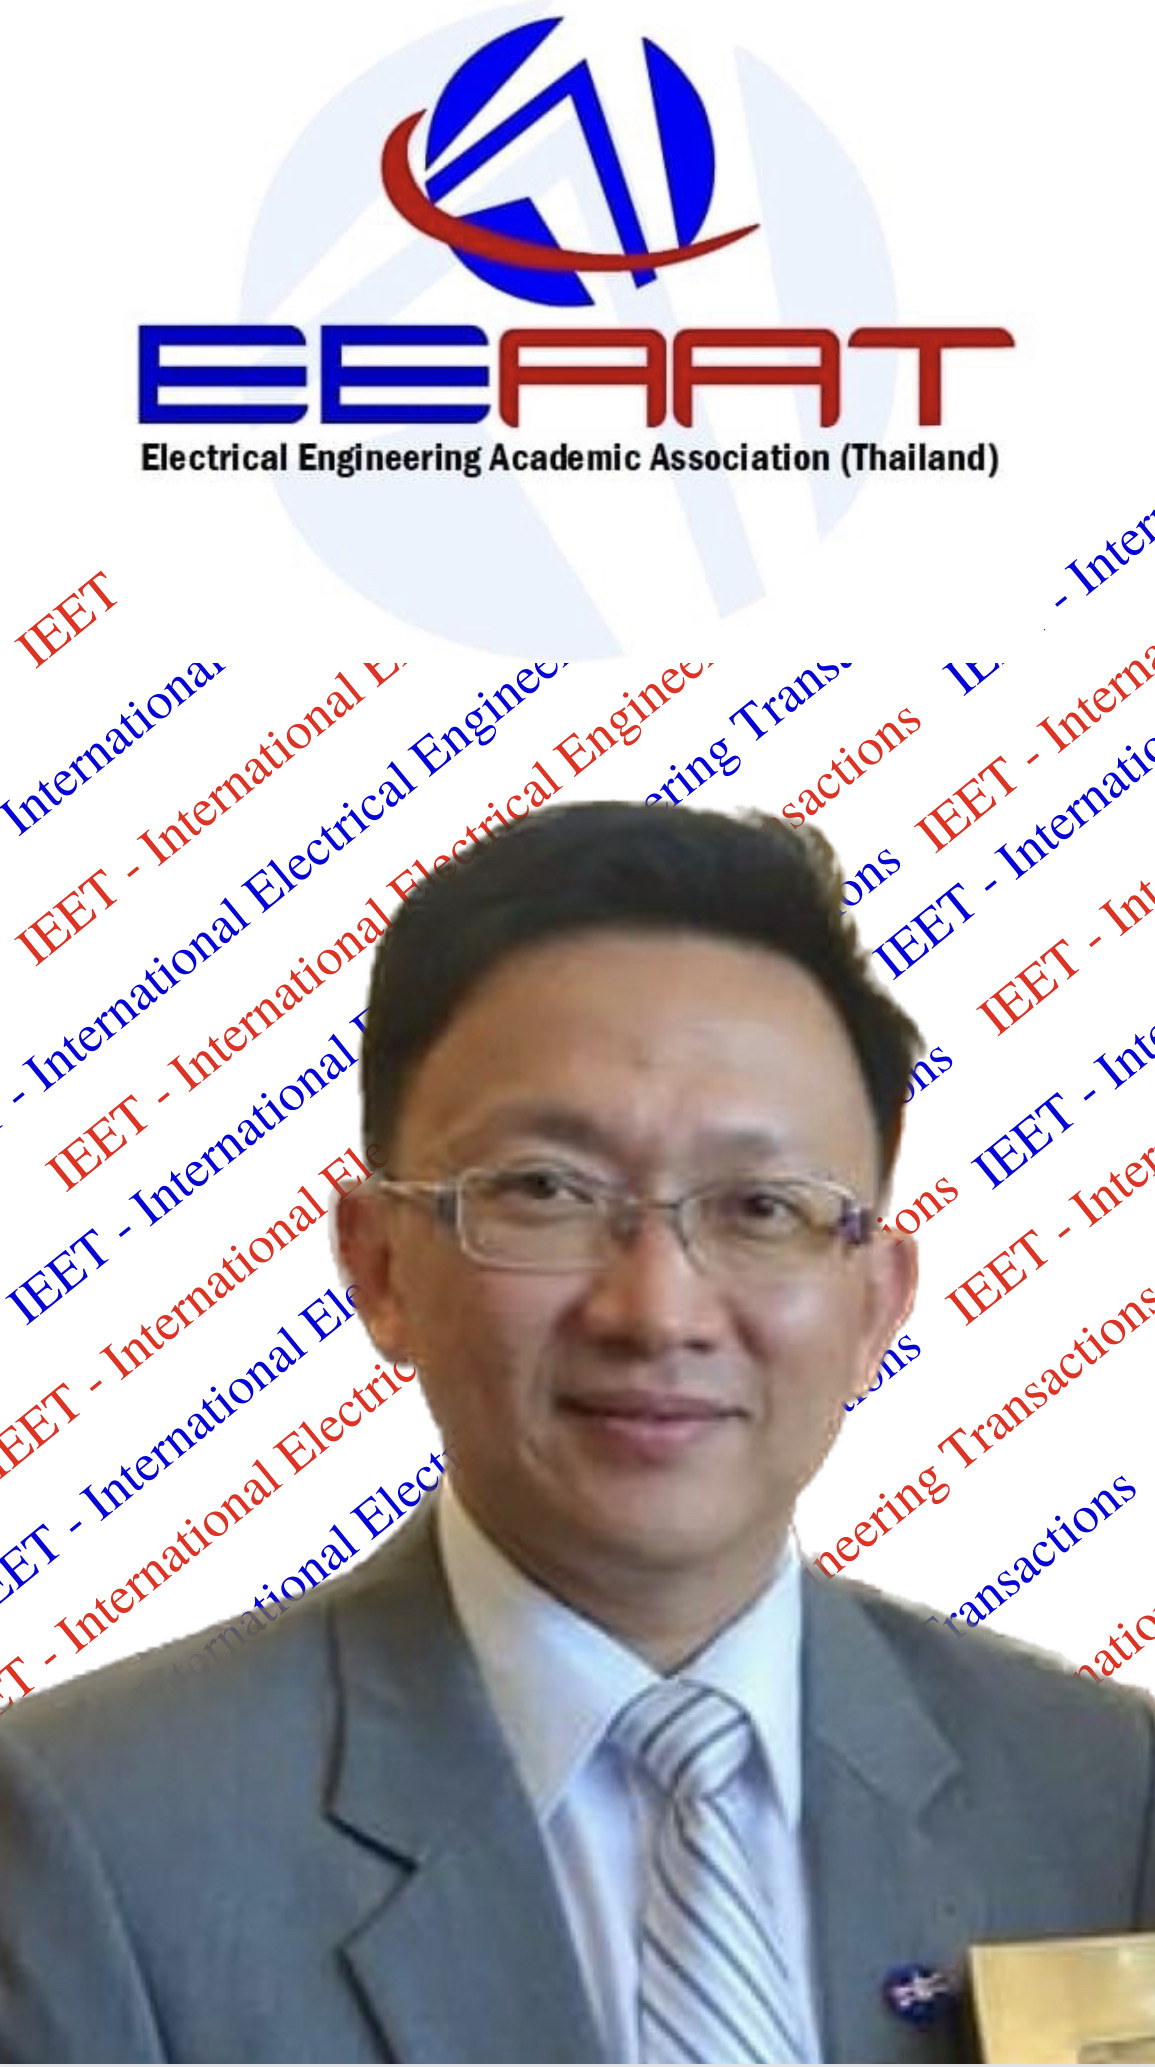 ศาสตราจารย์ ดร.อภิรัฐ ศิริธราธิวัตร Prof. Dr.Apirat Siritaratiwat